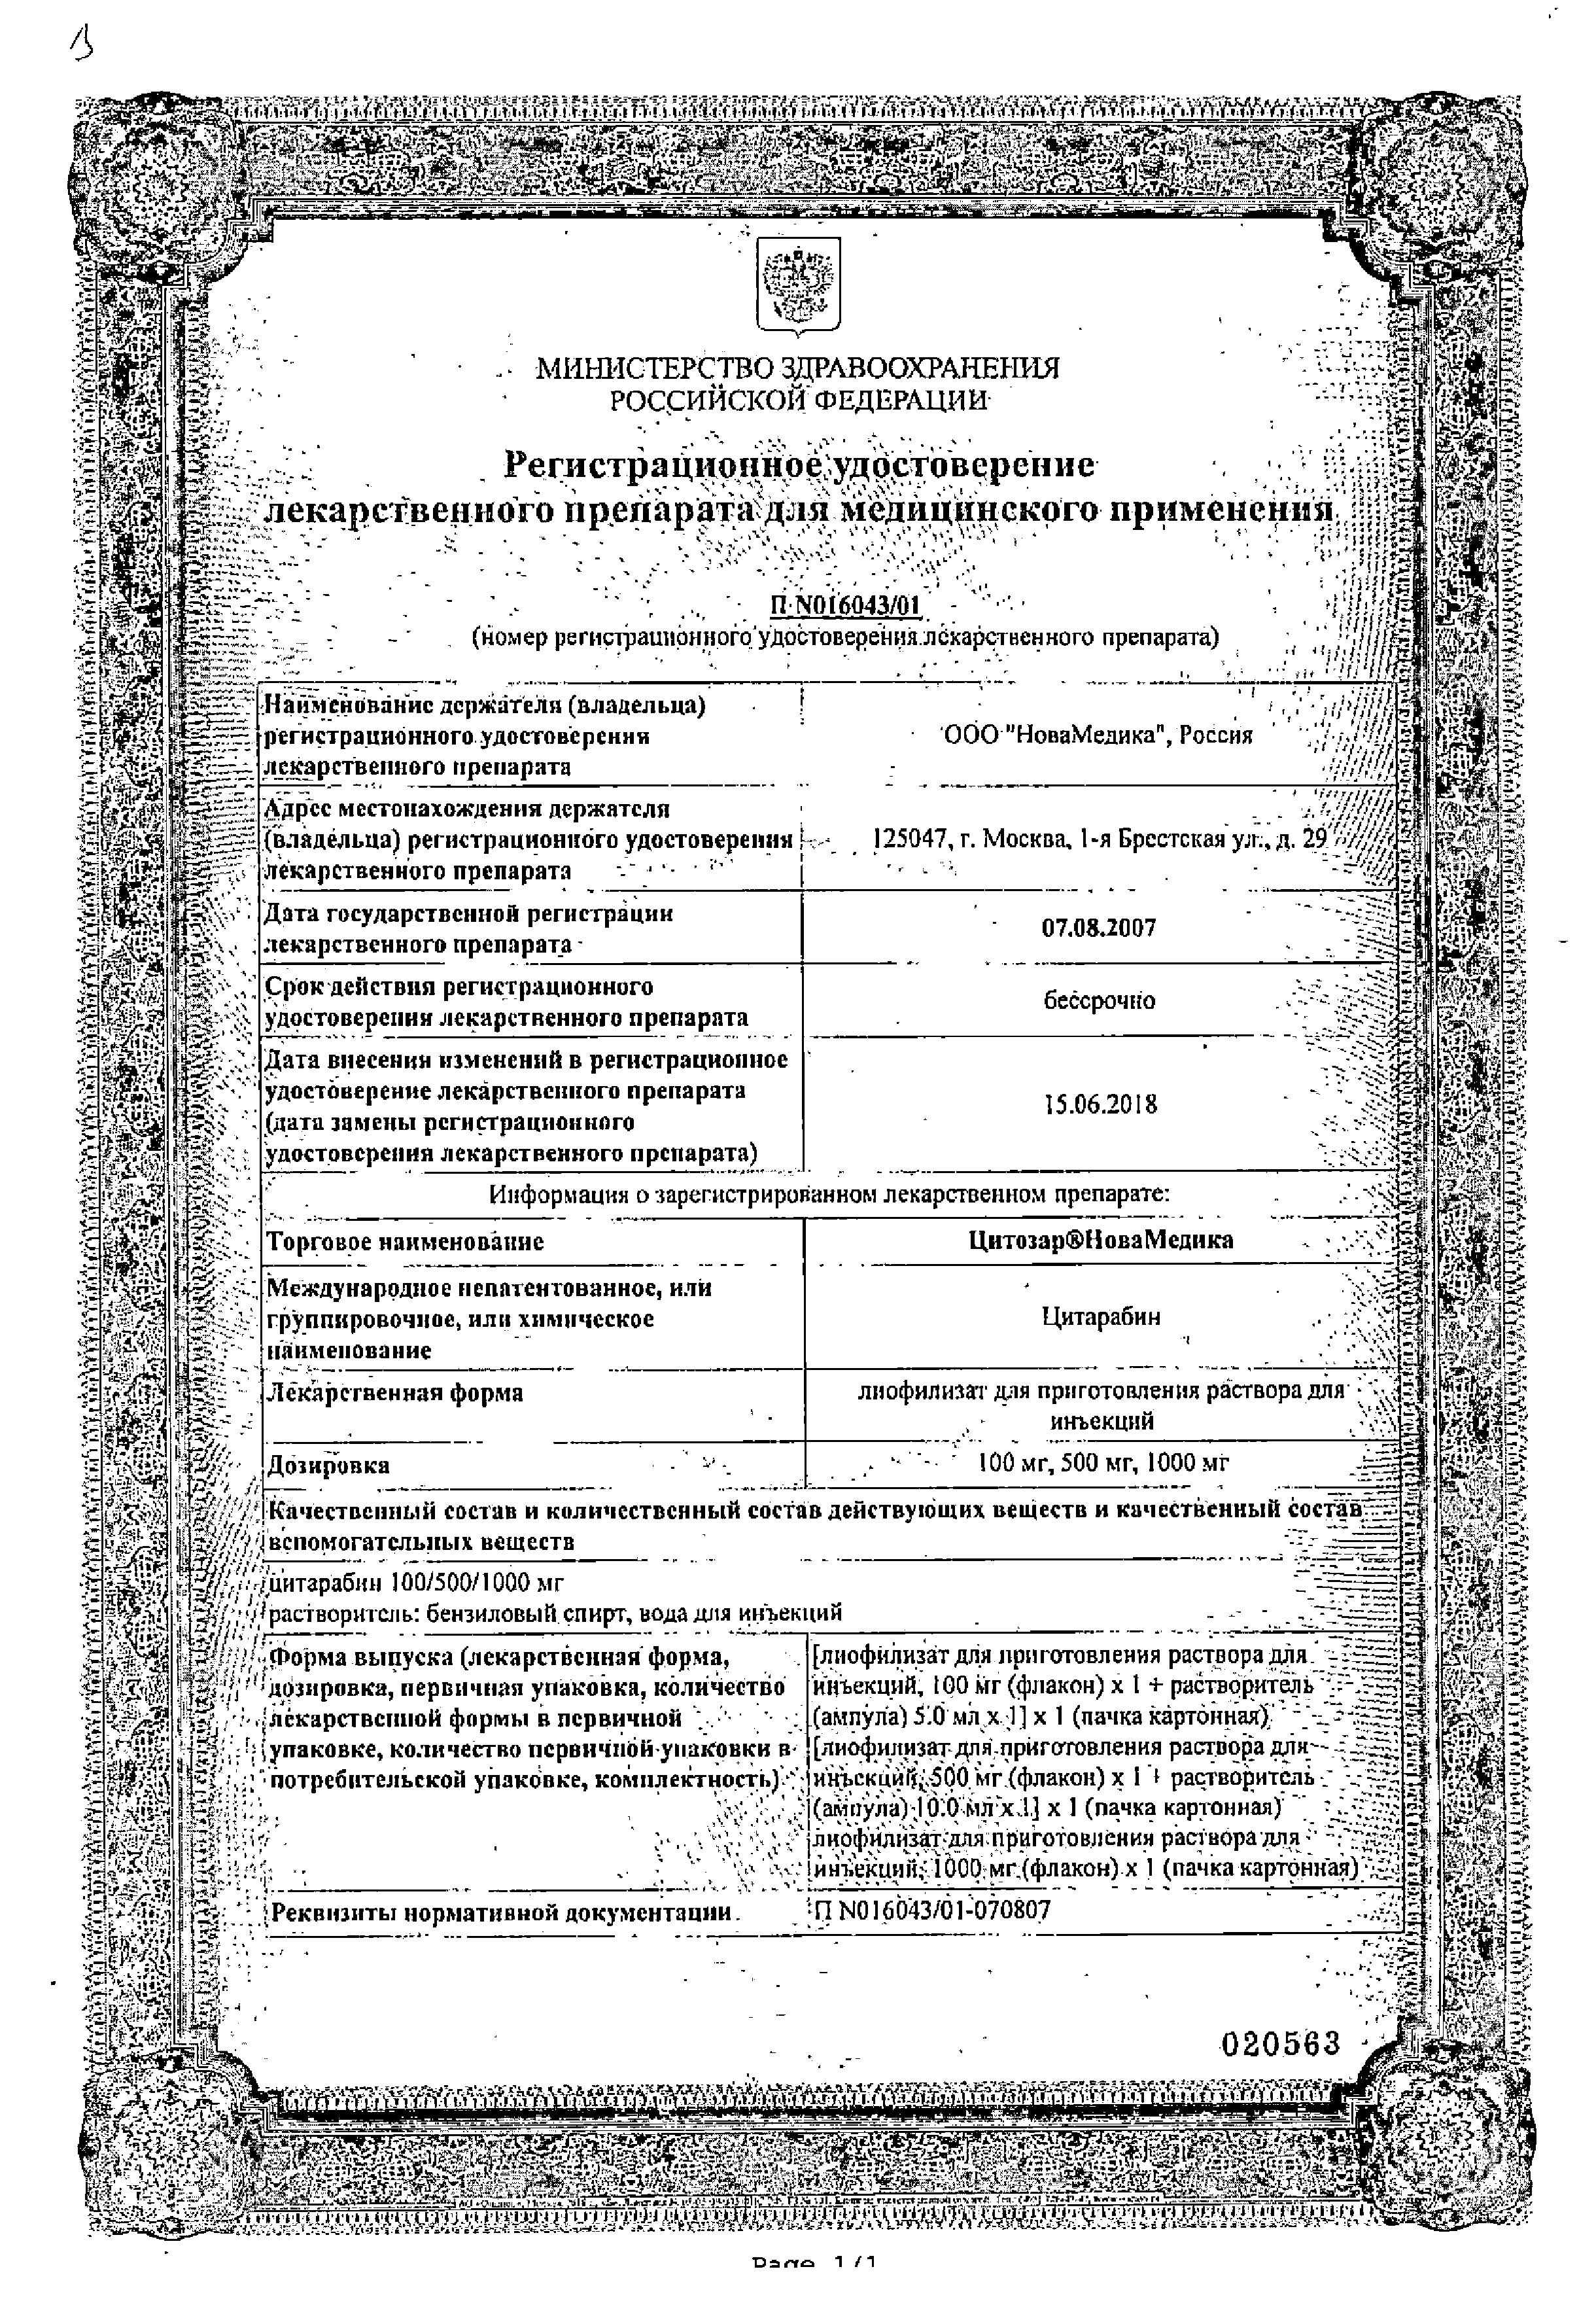 Цитозар сертификат